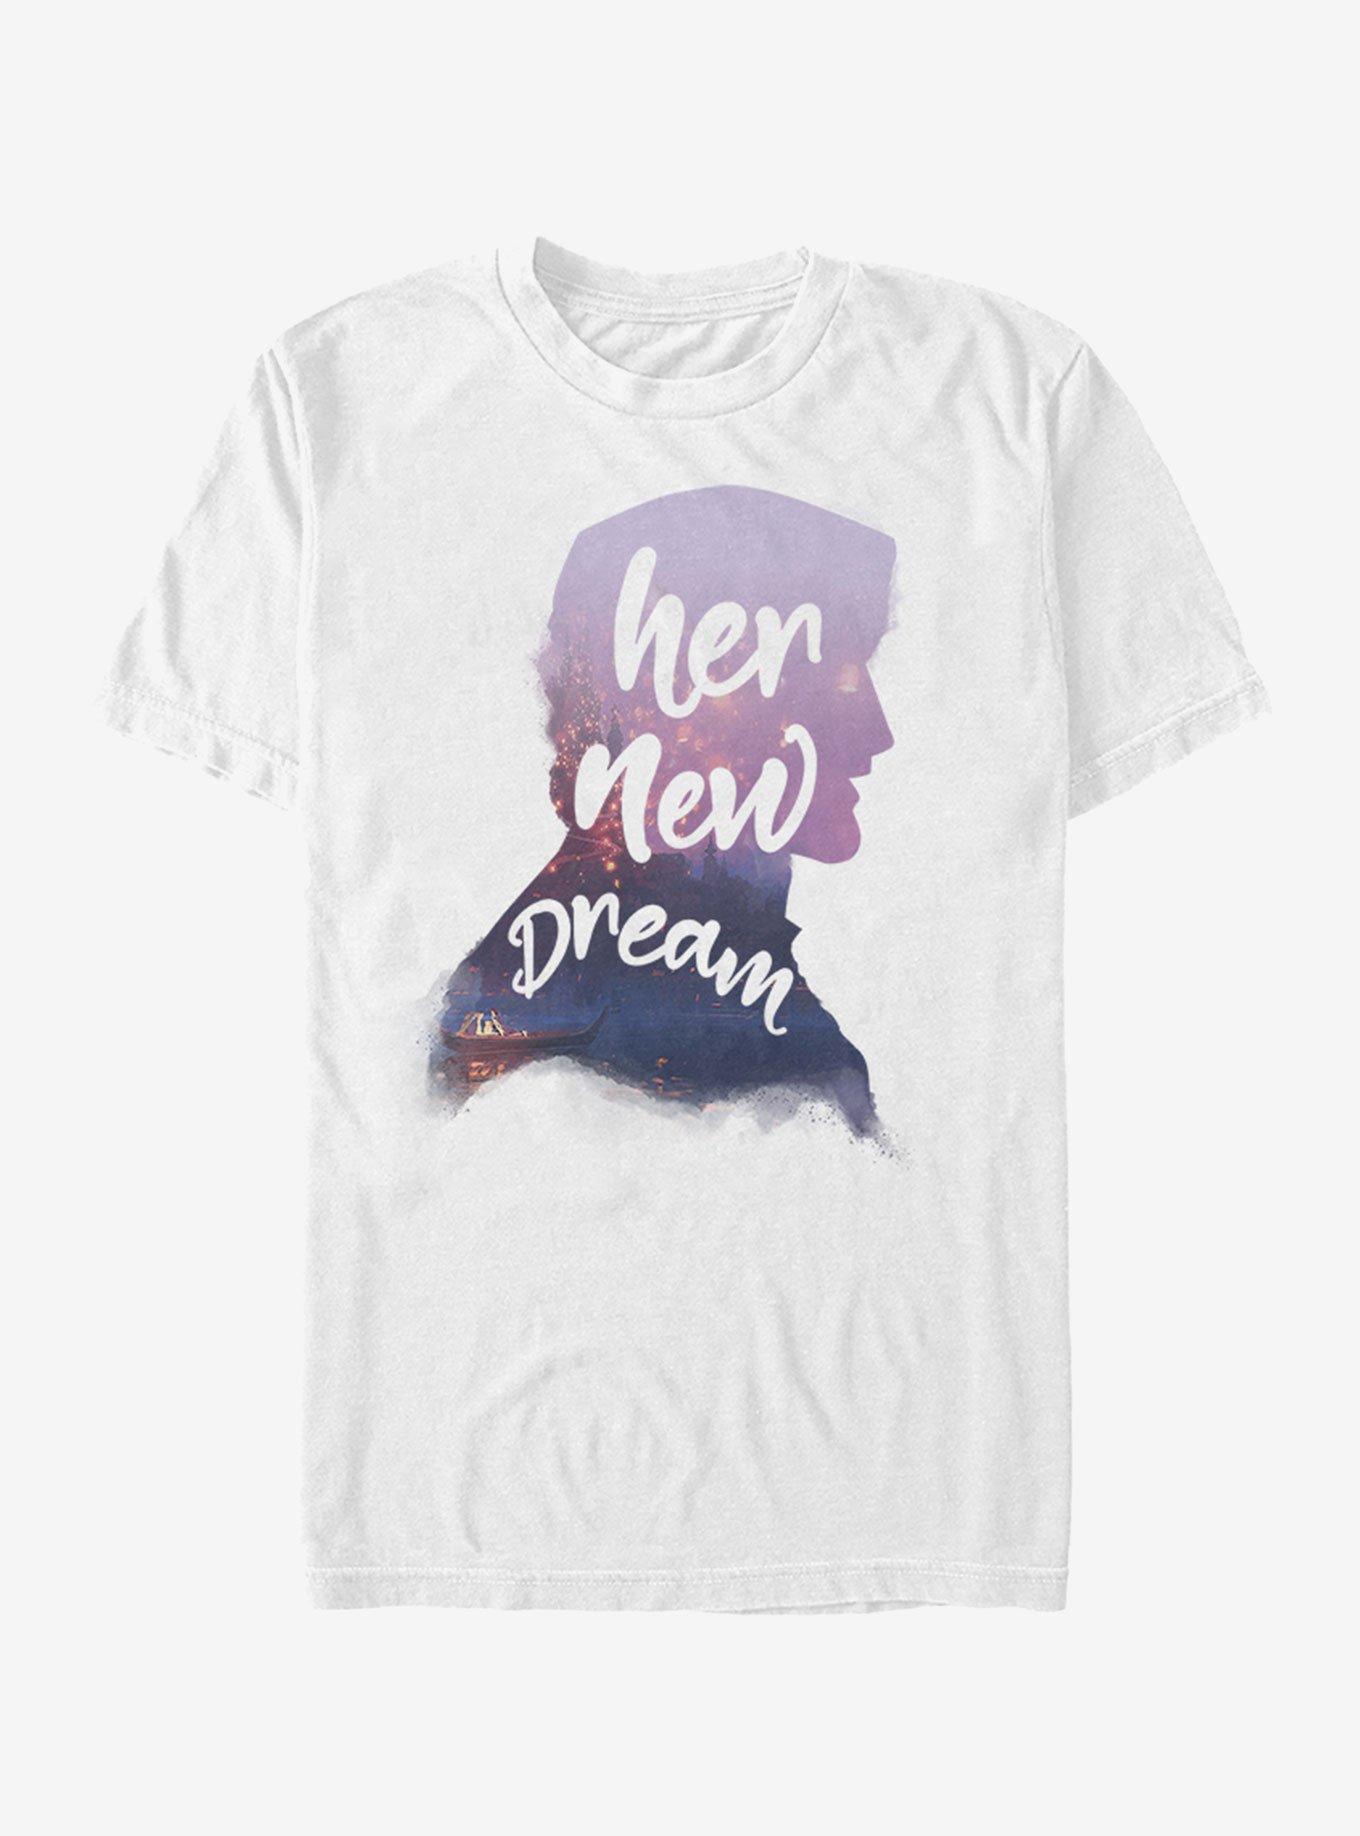 Extra Soft Disney Tangled Her New Dream Eugene  T-Shirt, WHITE, hi-res